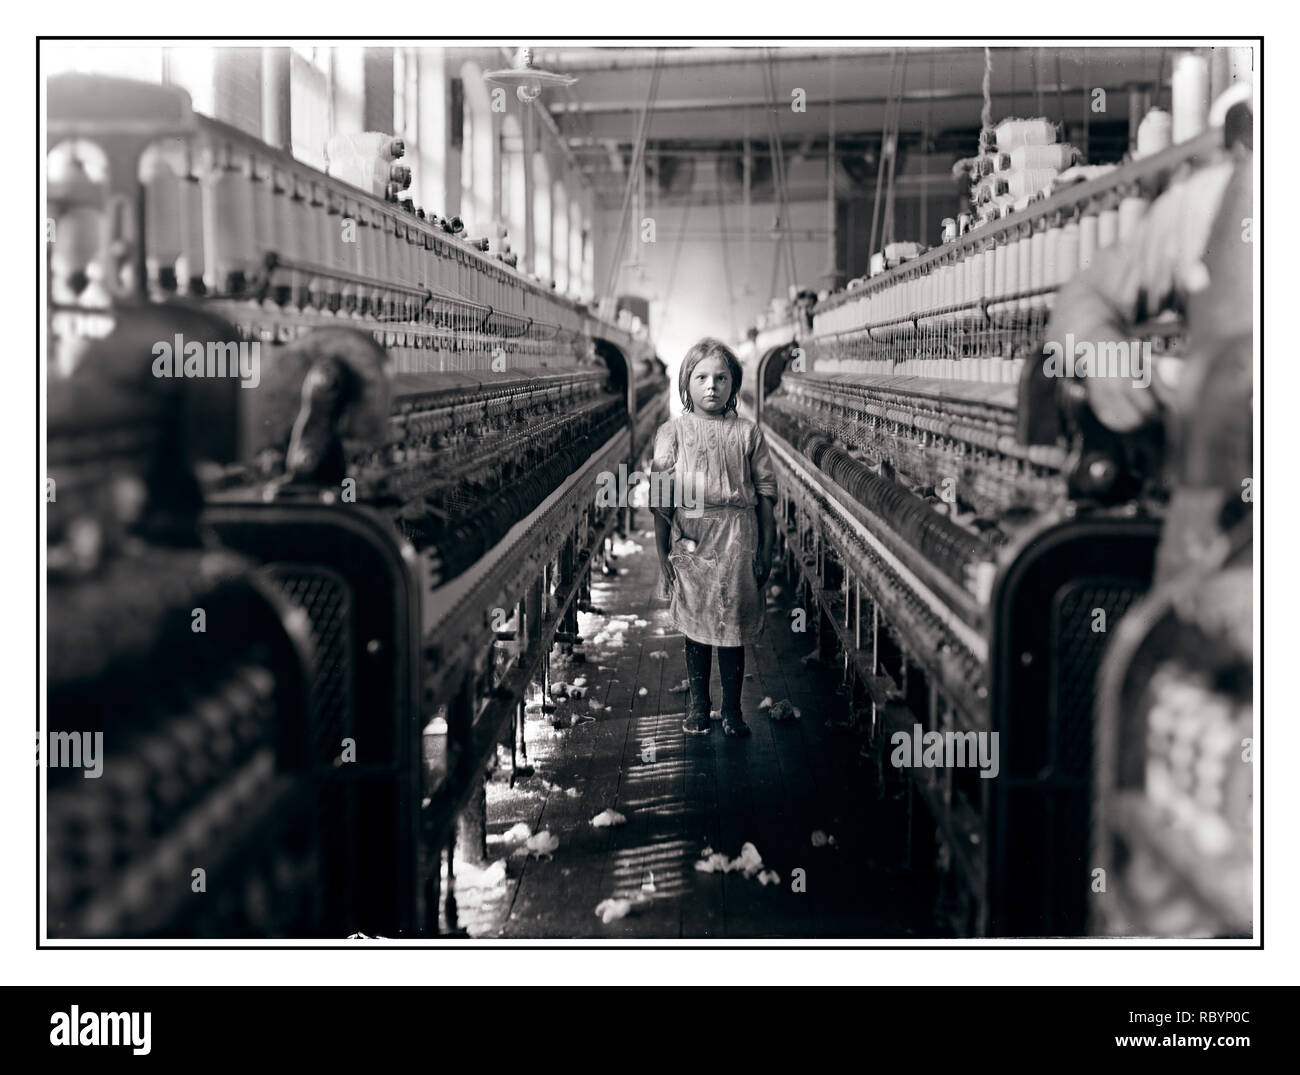 Para LOS NIÑOS LOS DERECHOS DE LOS TRABAJADORES MENORES DE EDAD LABORAL Archive 1900 cruda imagen de menores de edad joven trabajador el trabajo en las fábricas de algodón Mollohan,